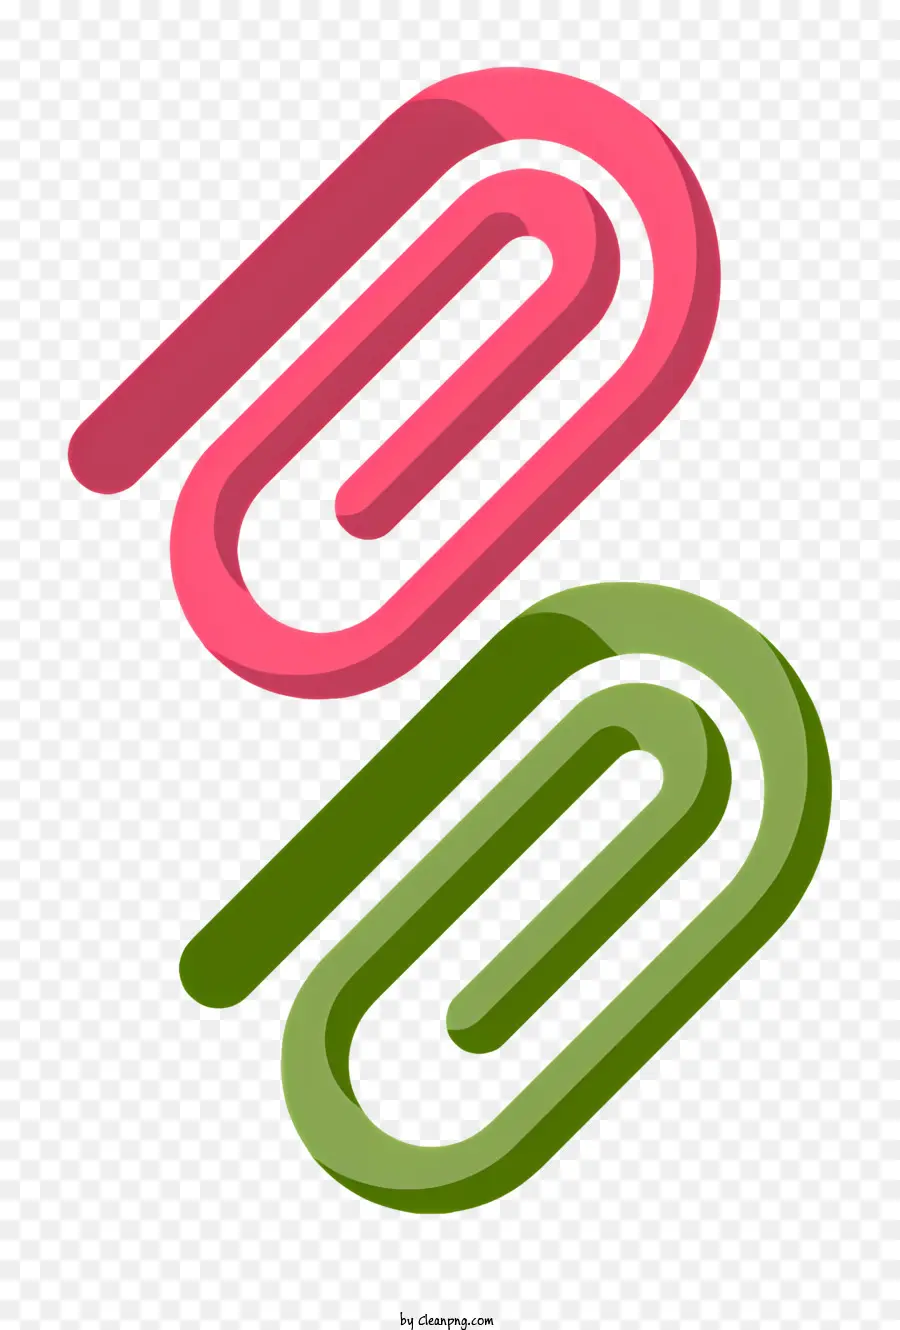 manico verde paperclip manico rosa clip sfondo nero - Clip di carta con manico verde e rosa sul nero